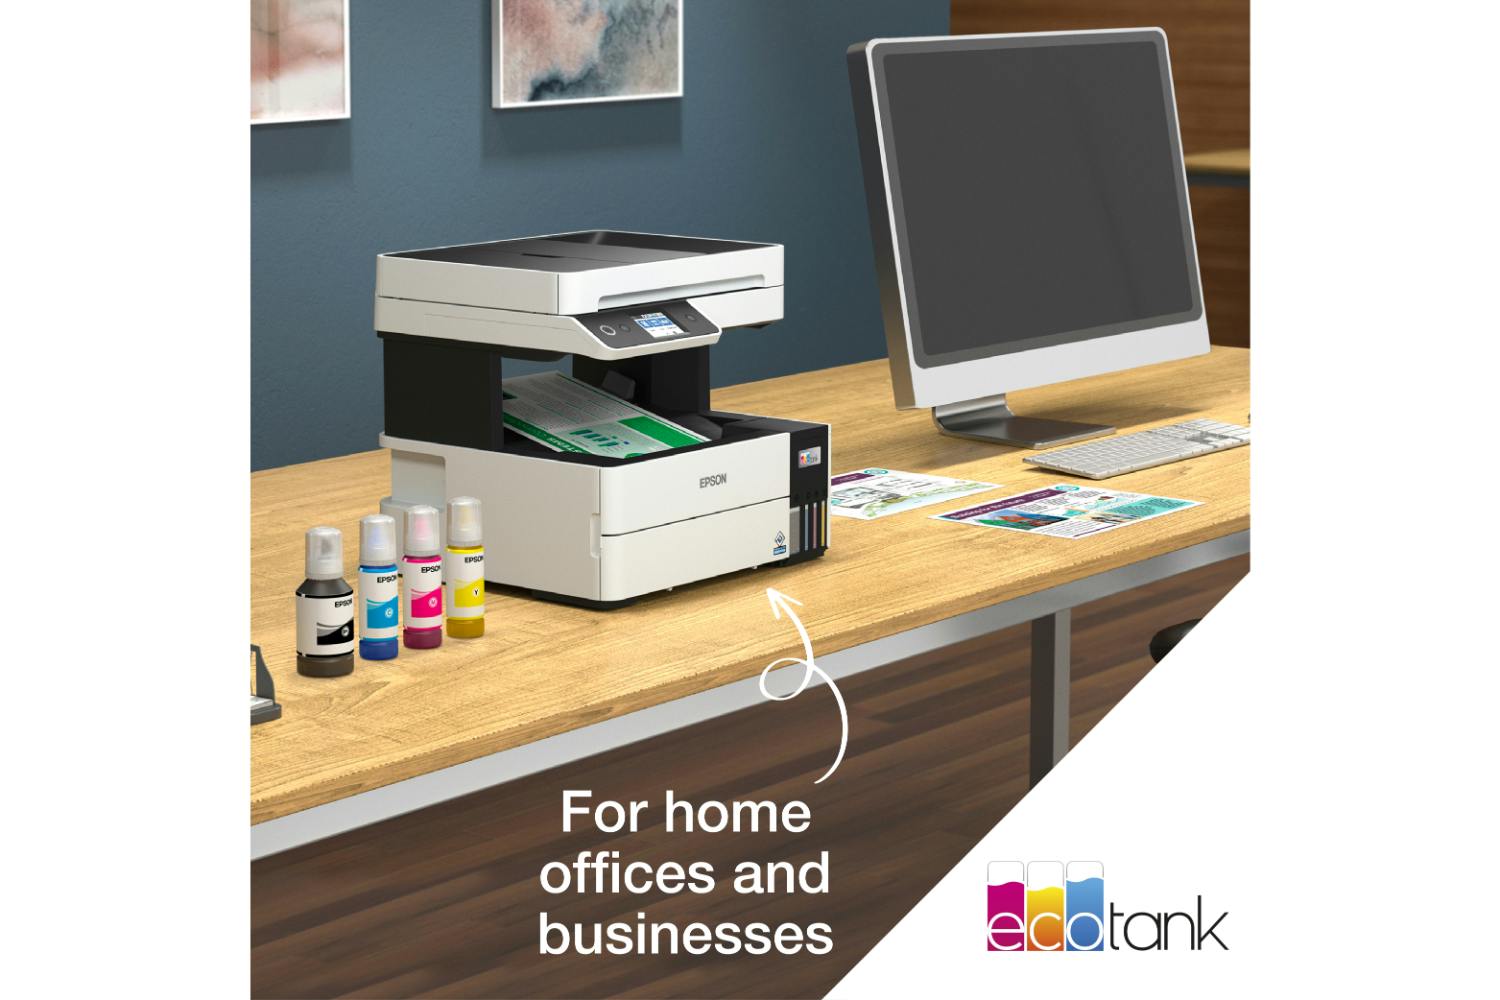 Epson EcoTank ET-5150 All-in-One Inkjet Printer